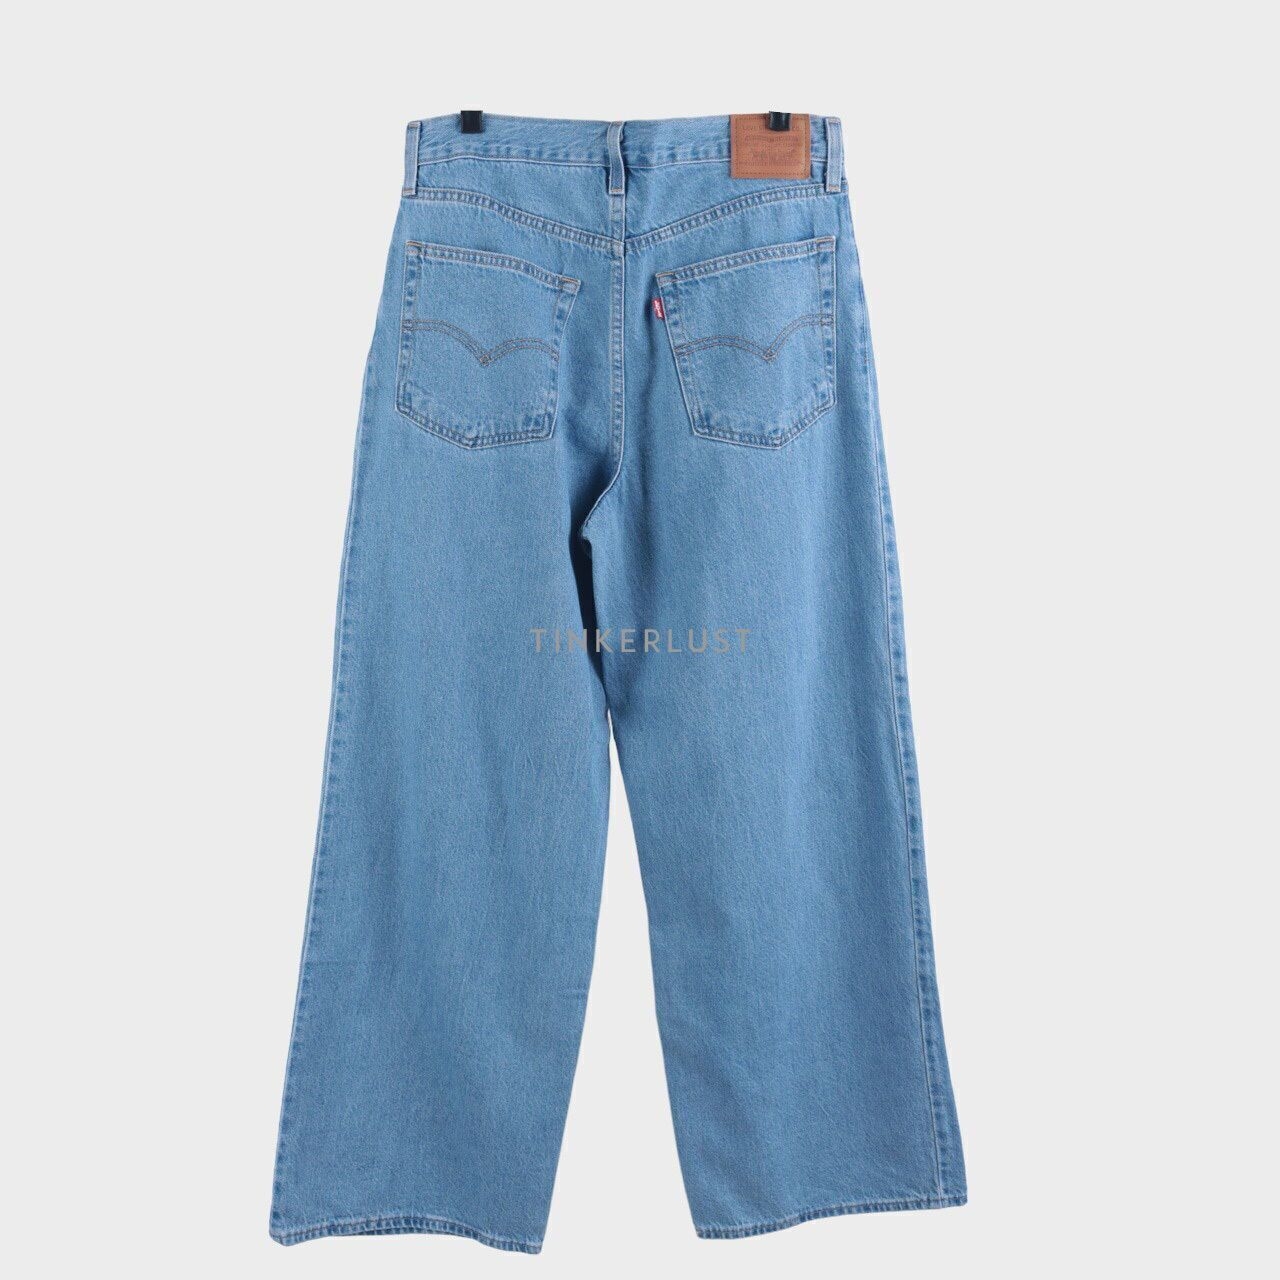 Levi's Blue Jeans Long Pants